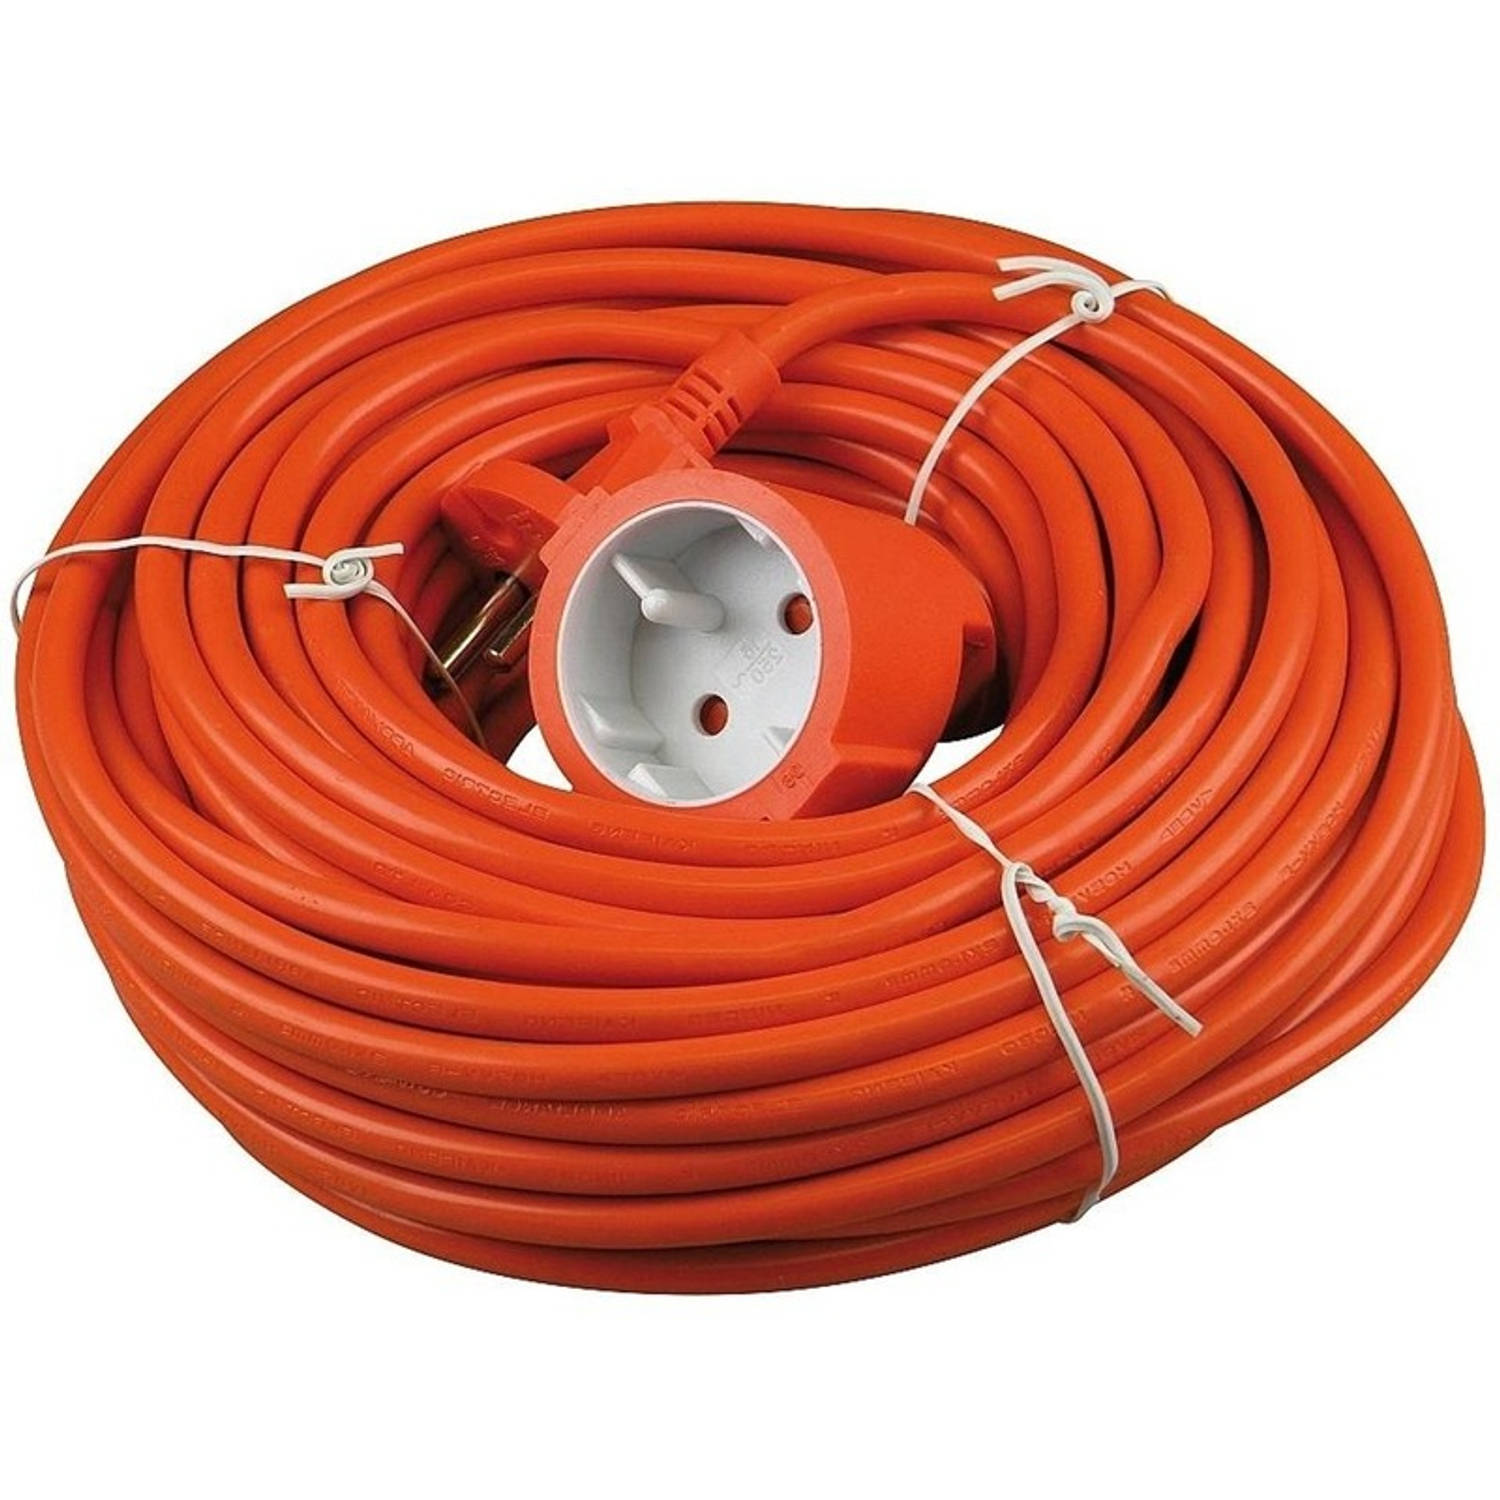 opleggen Archaïsch plaag Verlengsnoer/kabel oranje 20 meter binnen/buiten - Verlengsnoeren | Blokker